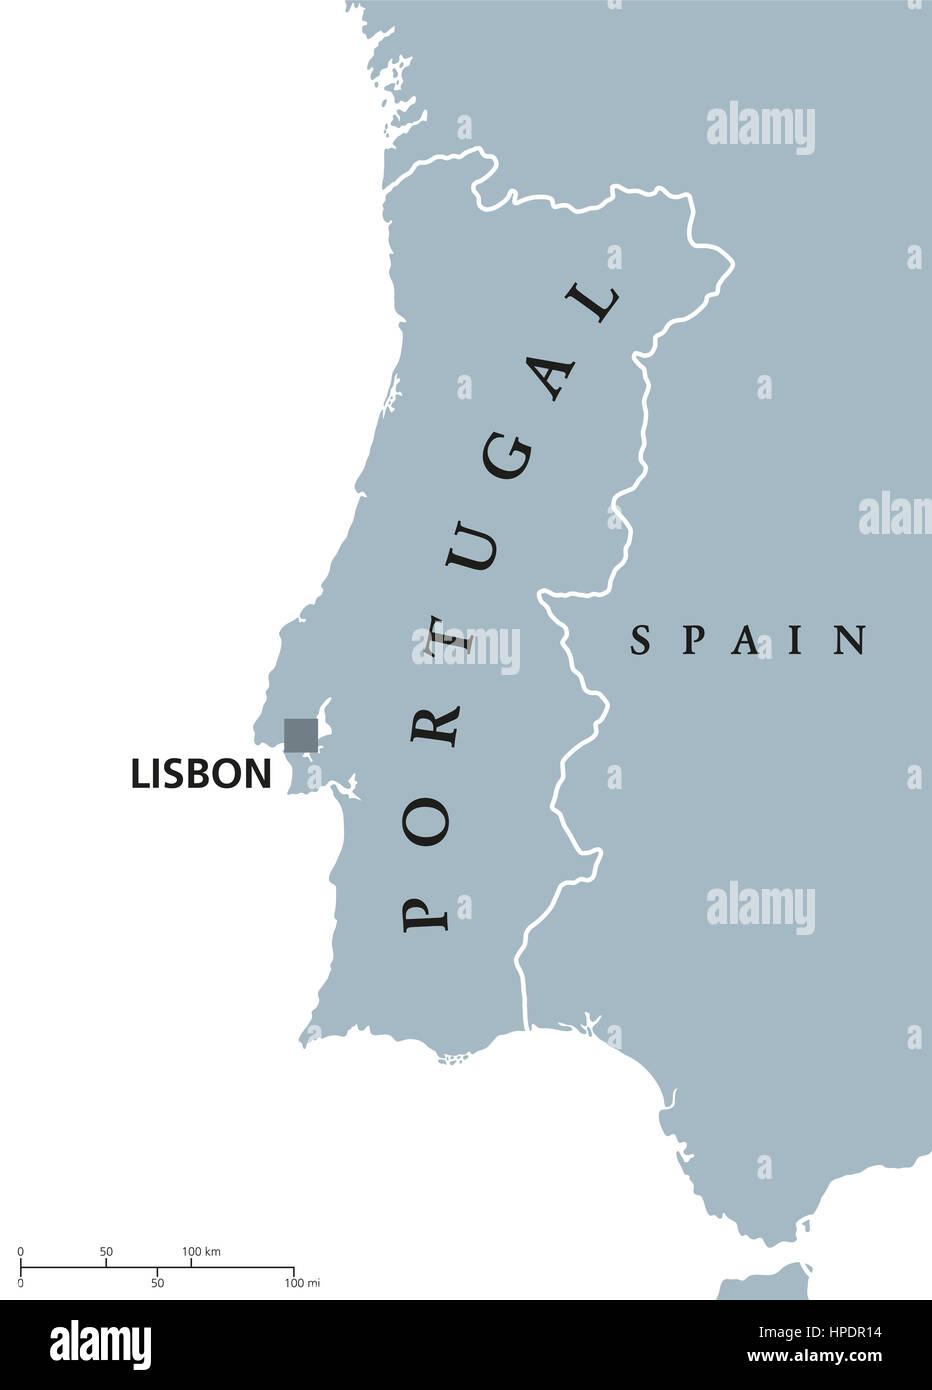 Il Portogallo mappa politico con capitale Lisbona e paesi vicini. Repubblica della penisola iberica in Europa sud-occidentale. Foto Stock